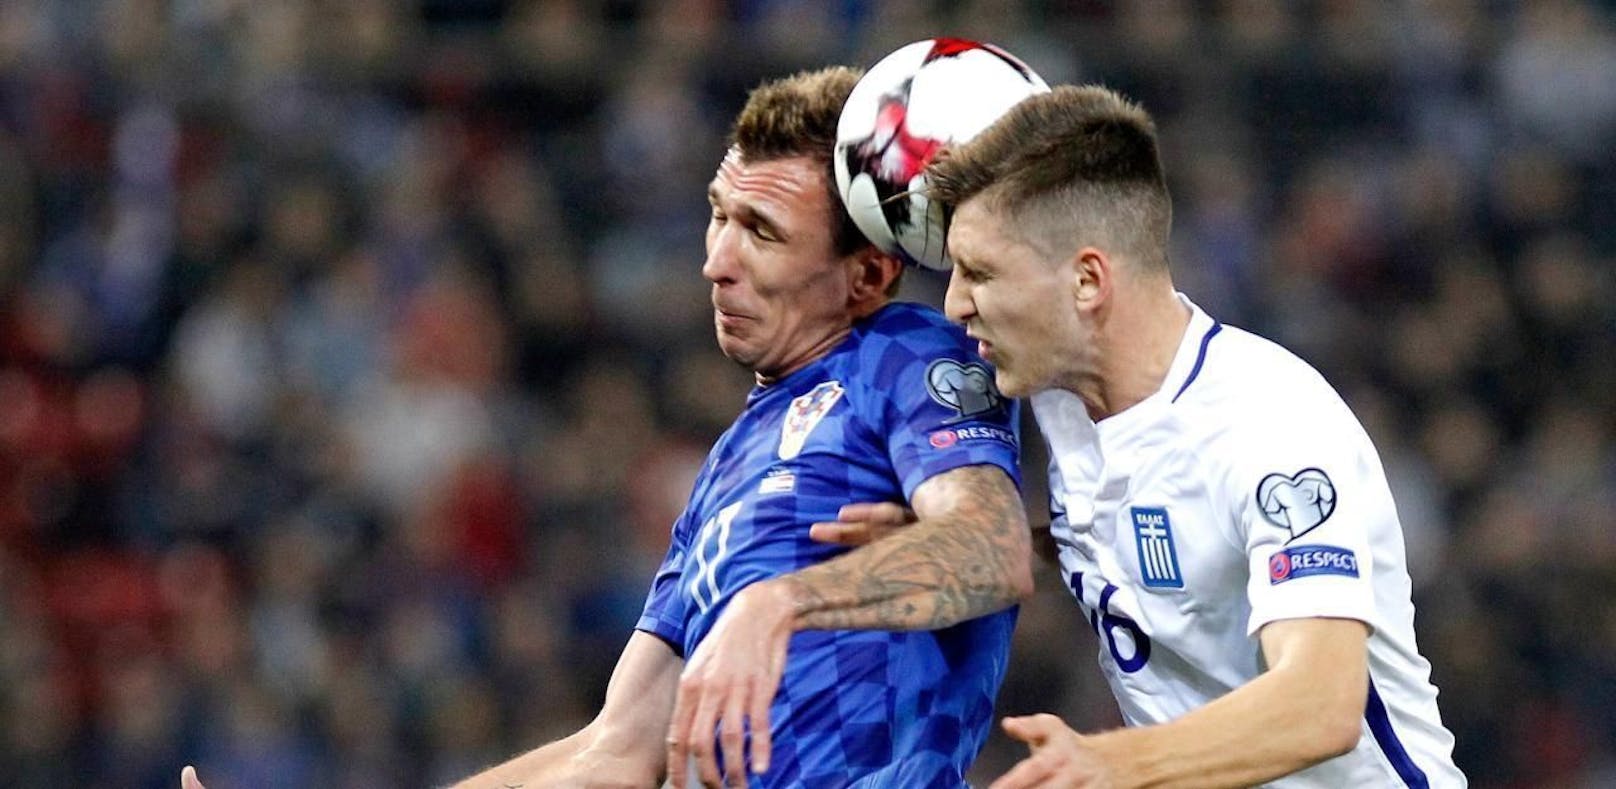 Viel Kampf und noch mehr Krampf - das Rückspiel zwischen Kroatien und Griechenland war kein Fußball-Leckerbissen. 